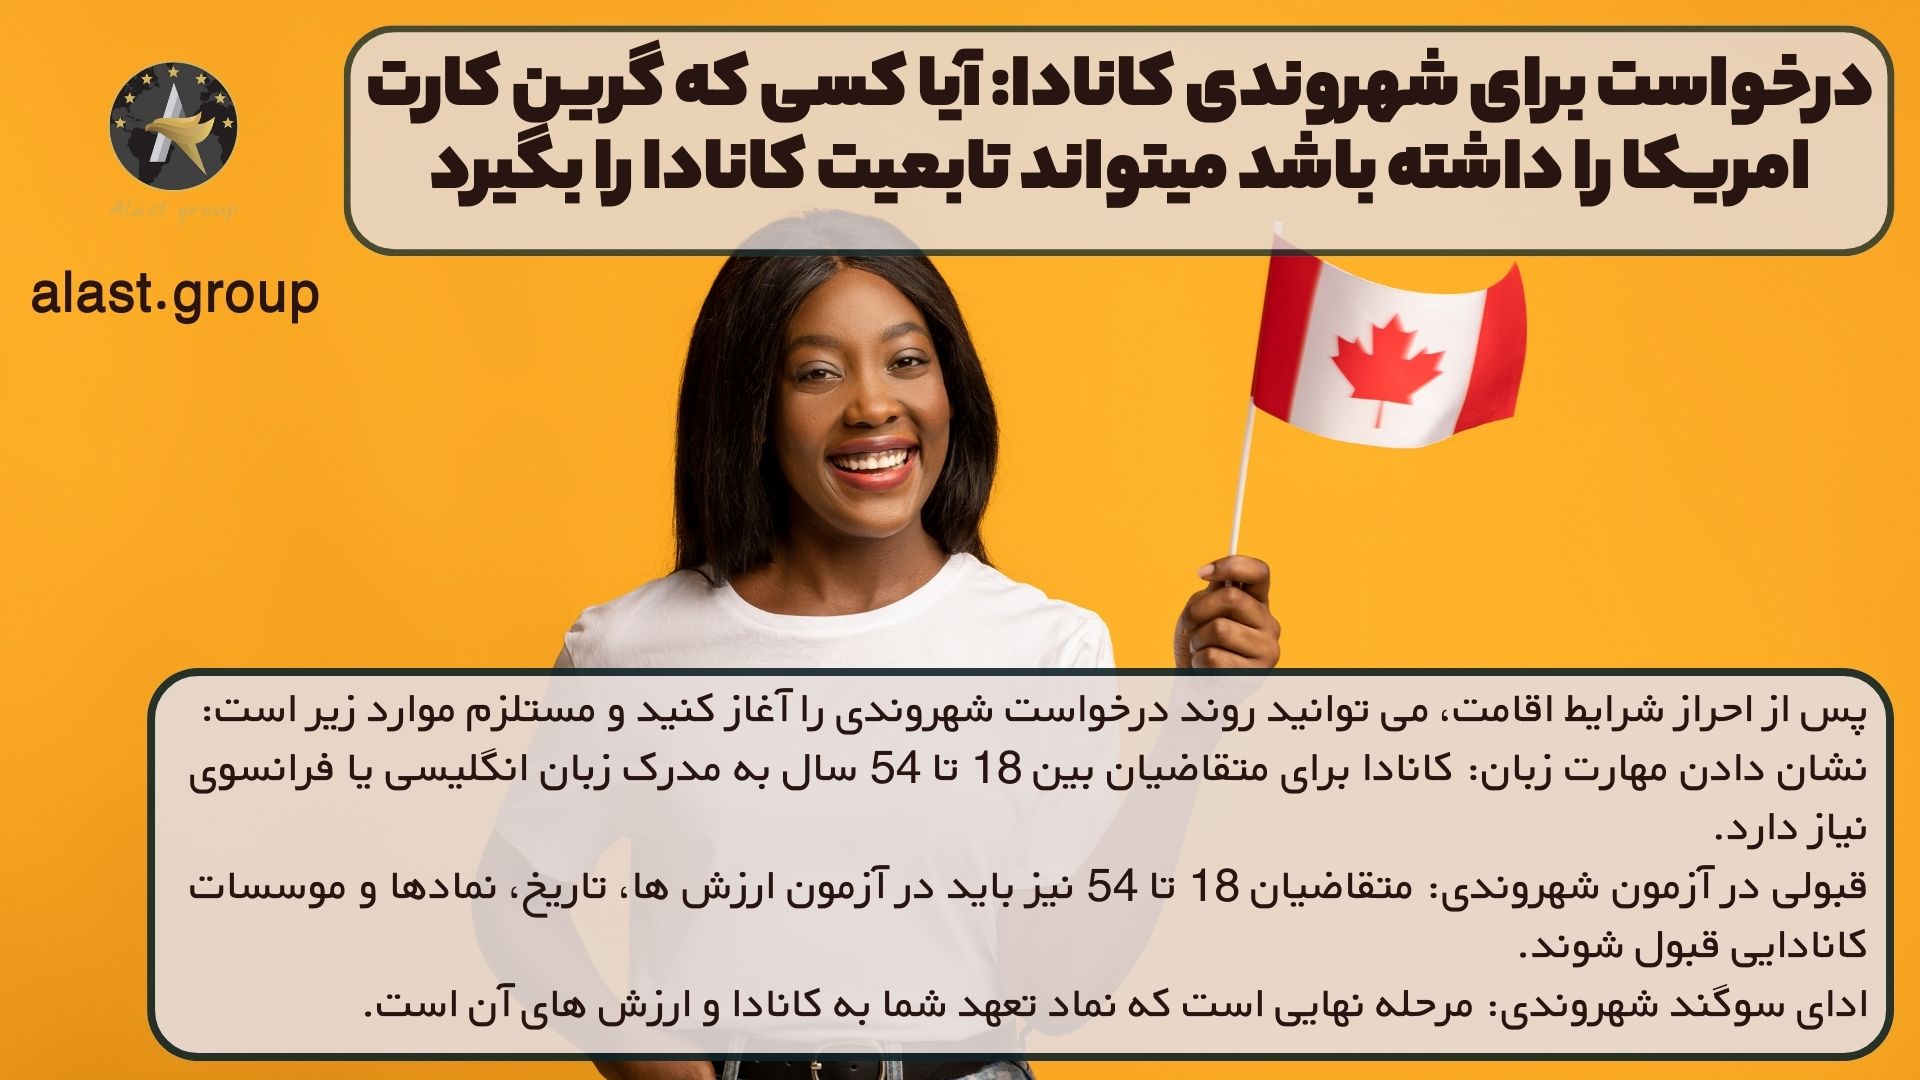 درخواست برای شهروندی کانادا: آیا کسی که گرین کارت امریکا را داشته باشد میتواند تابعیت کانادا را بگیرد